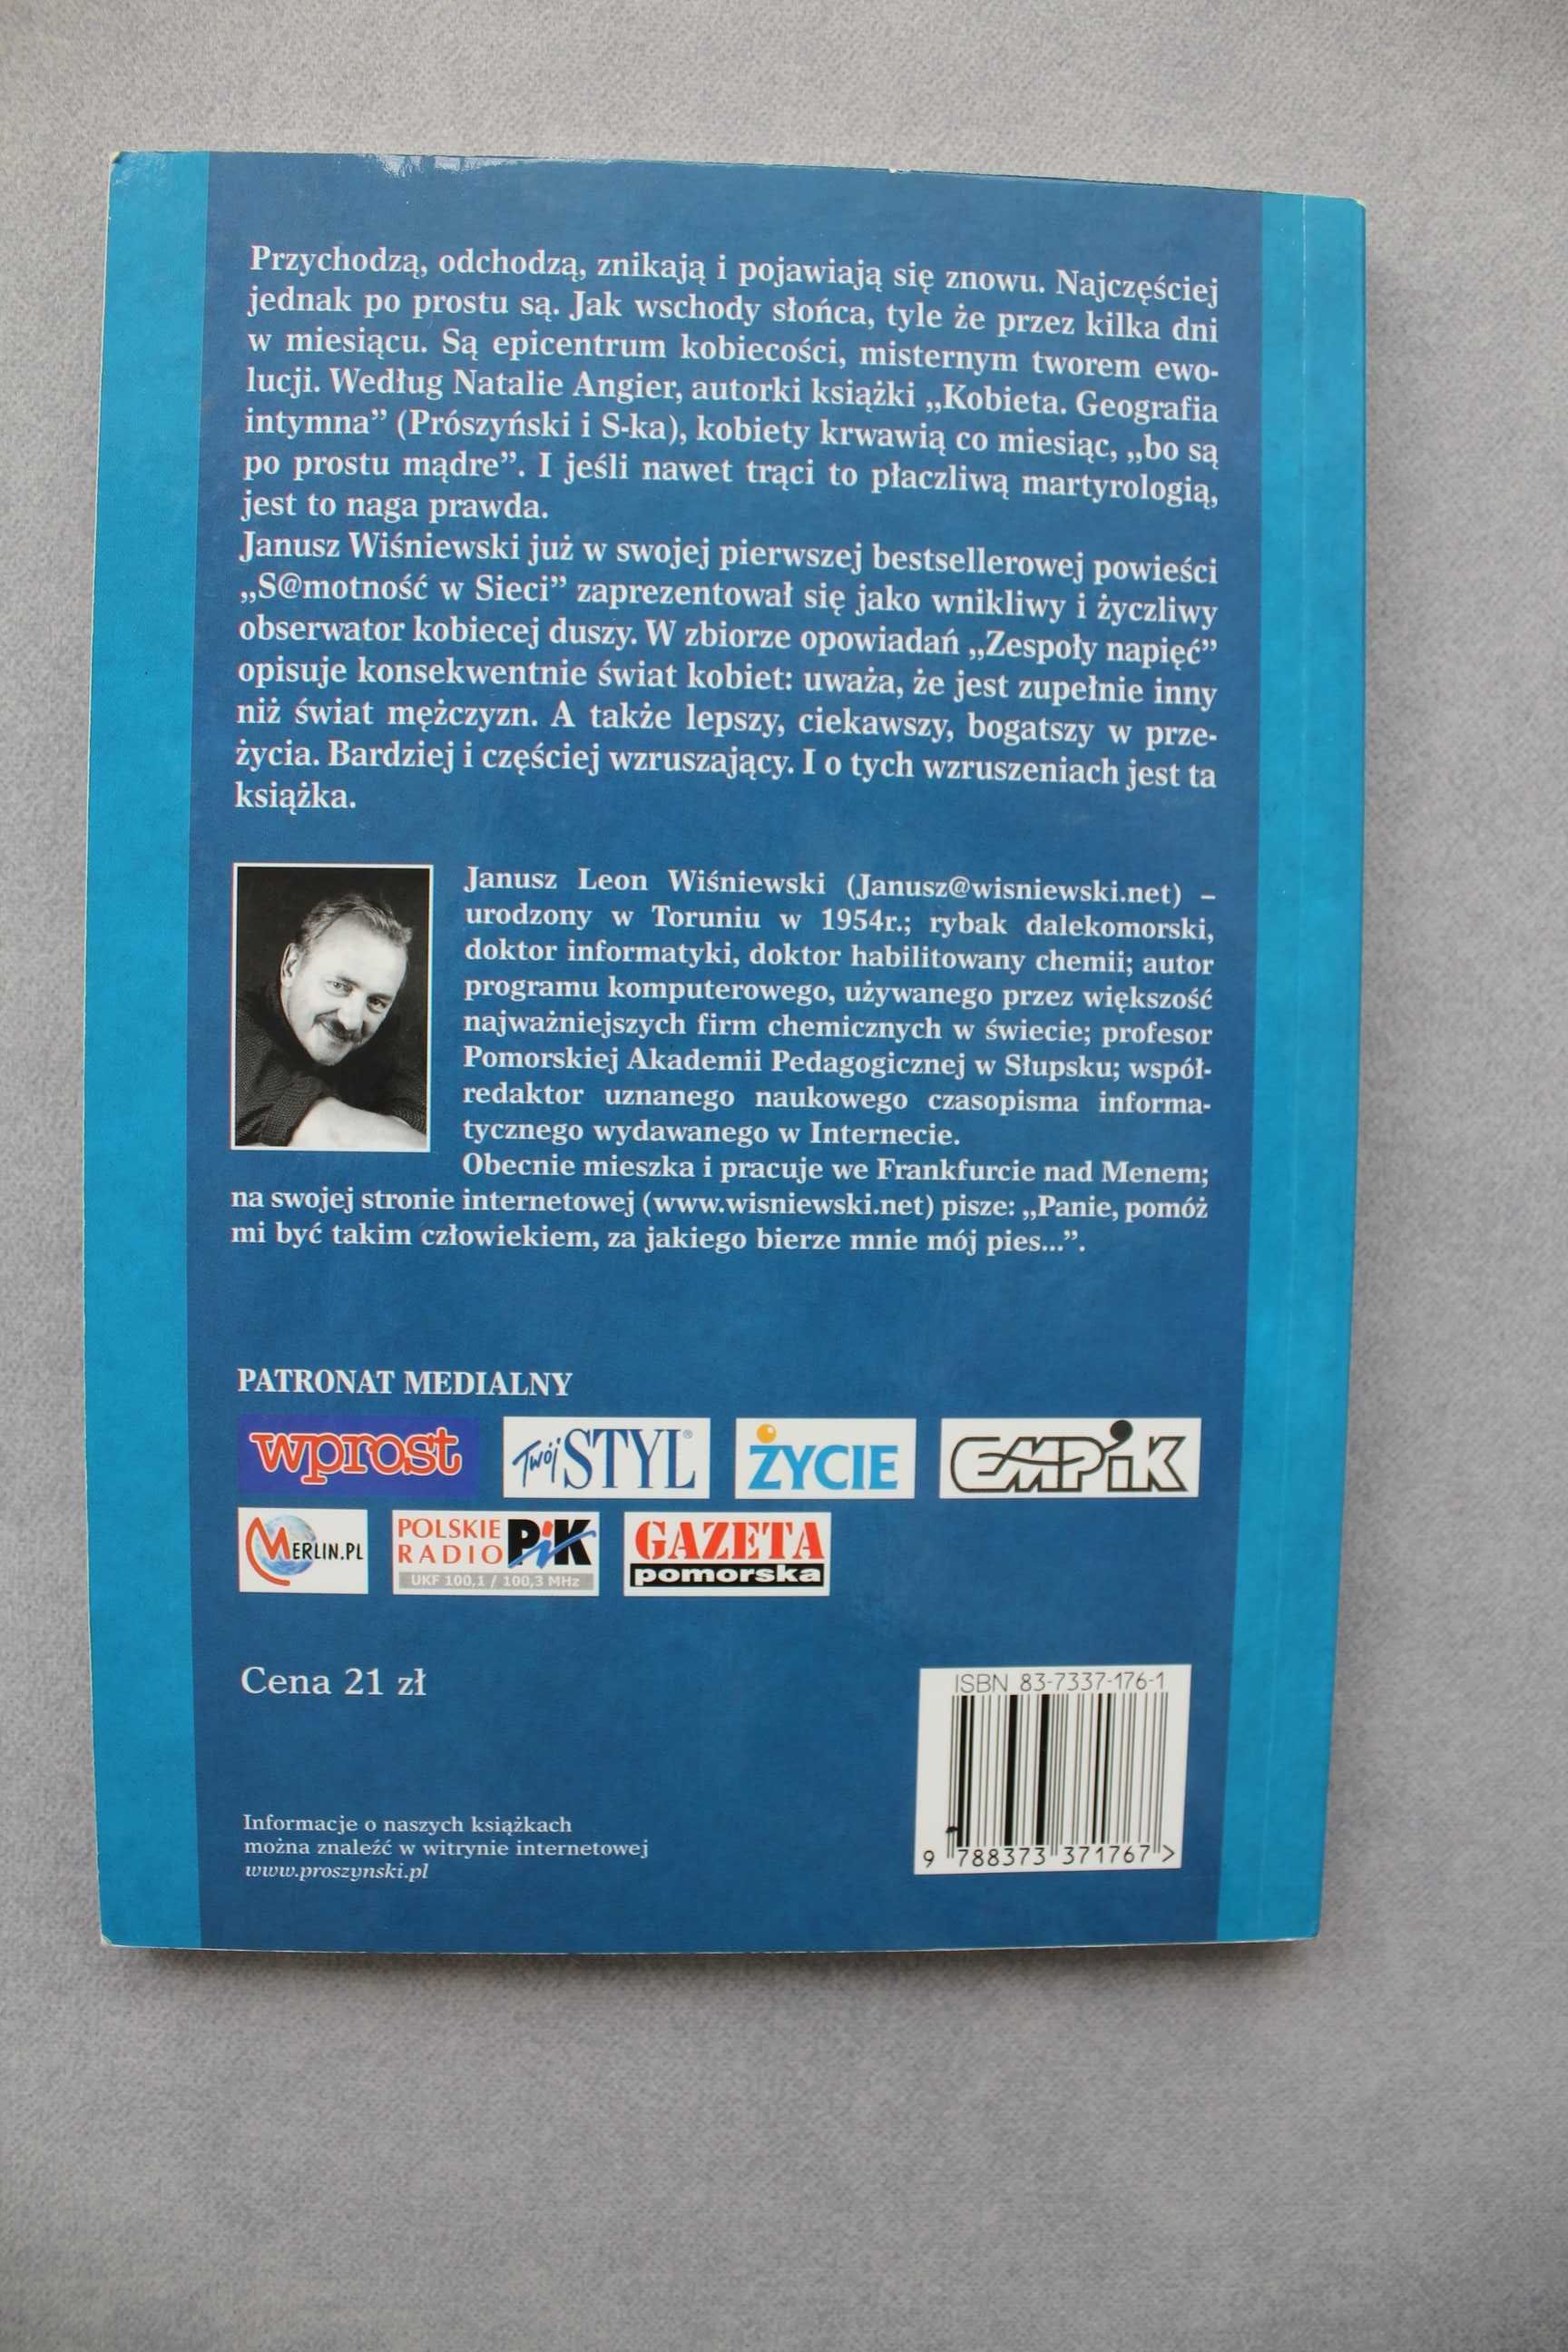 Zespoły napięć Janusz L. Wiśniewski Wydawnictwo Prószyński i S-ka 2002